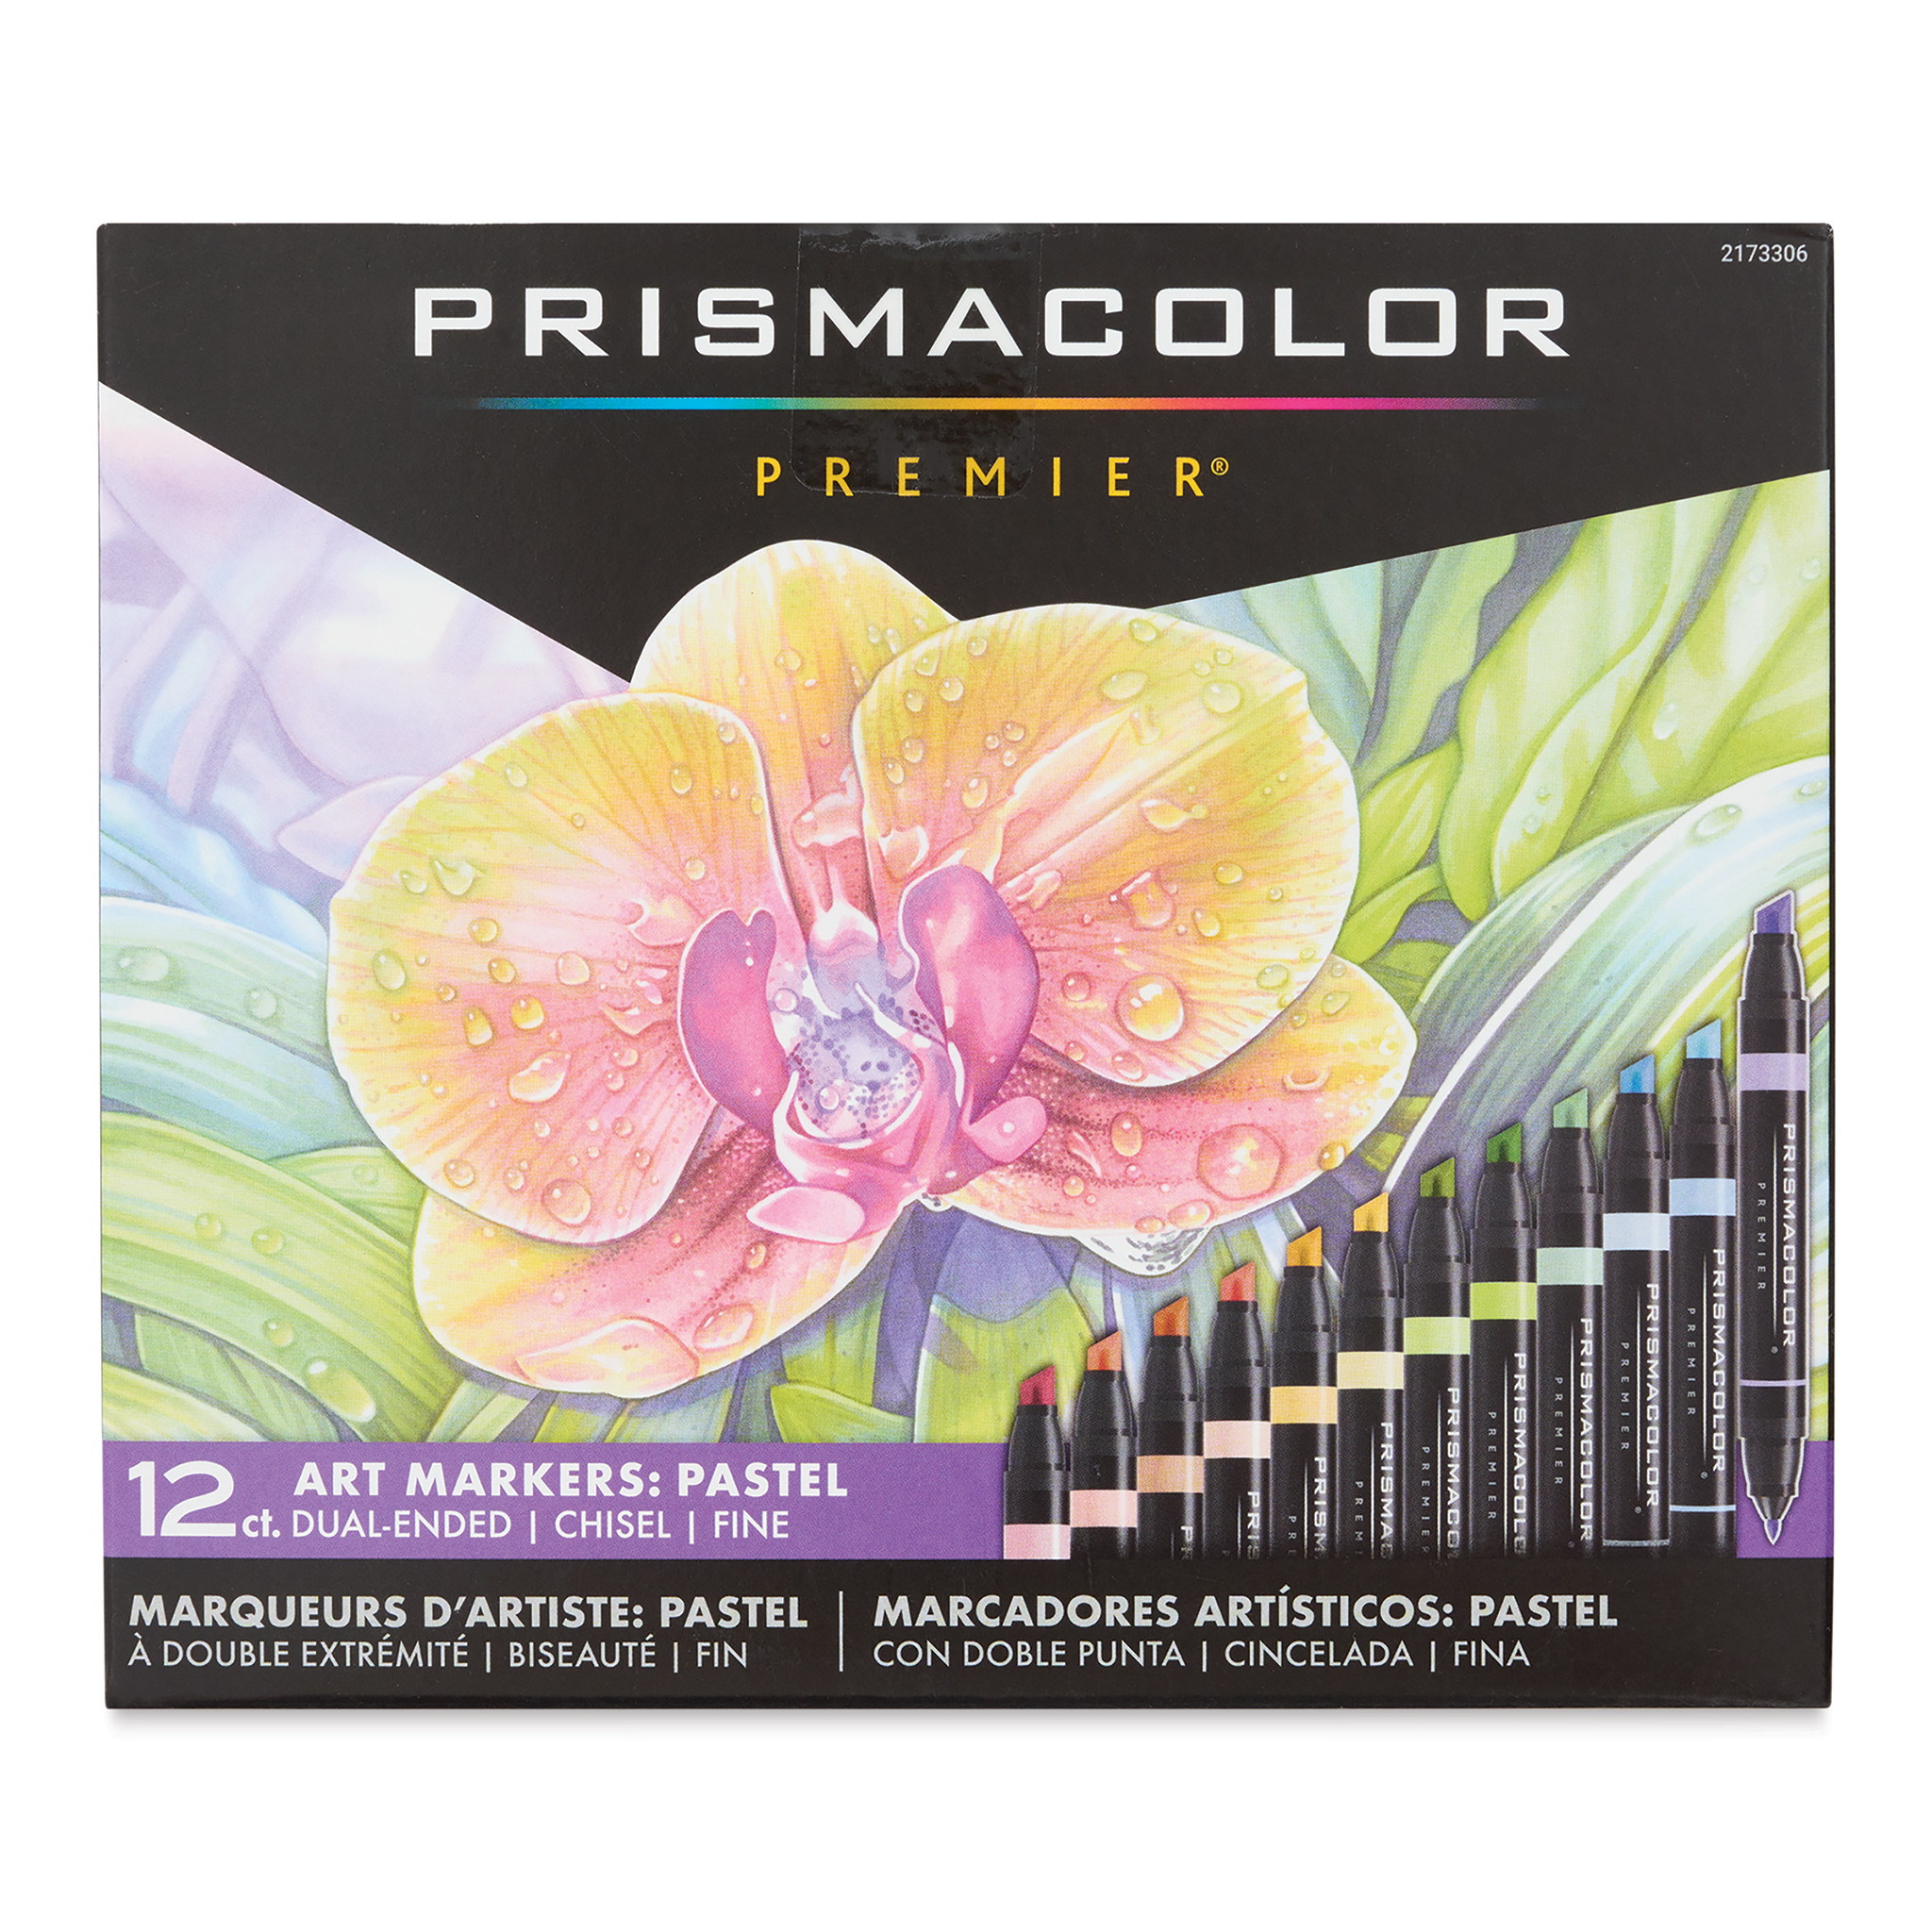 PRISMACOLOR® Premier Dual Ended CHISEL / FINE Art Marker Sets